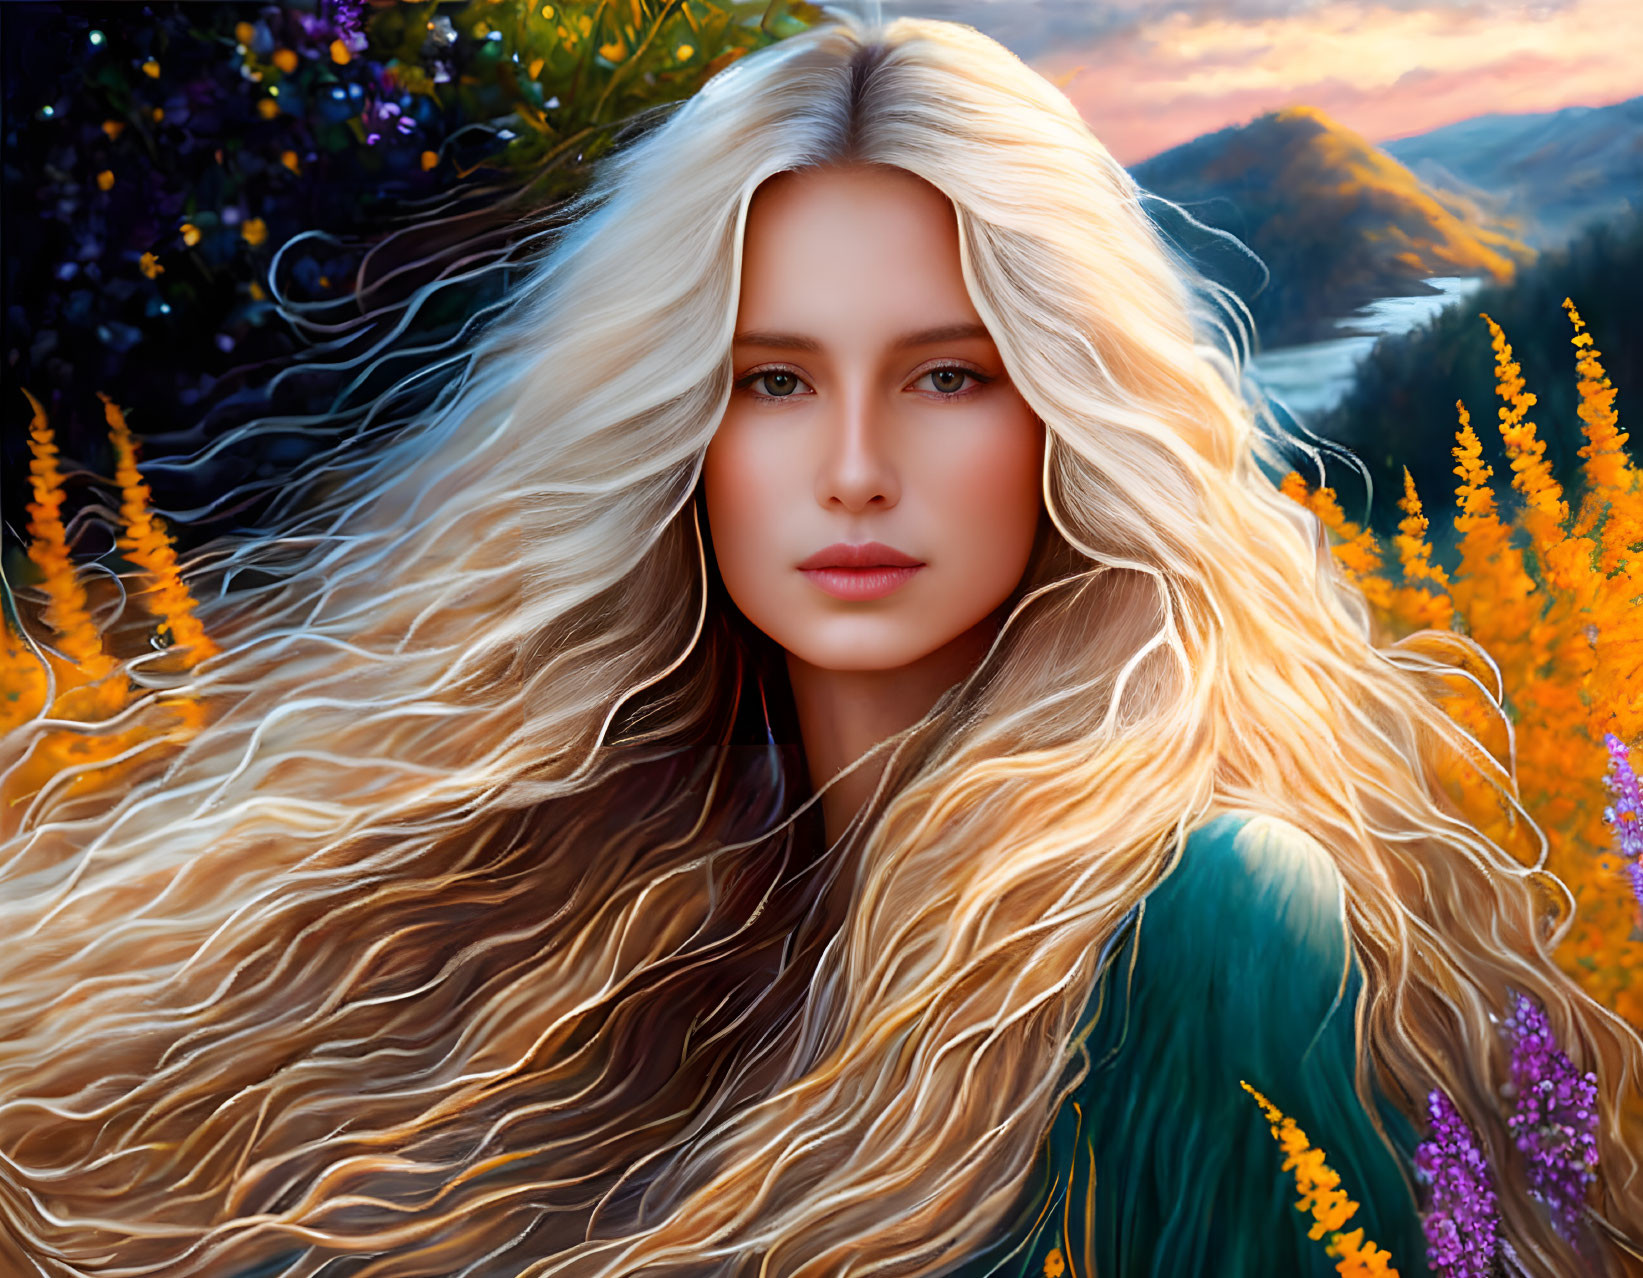 Blonde Woman Portrait in Autumnal Landscape